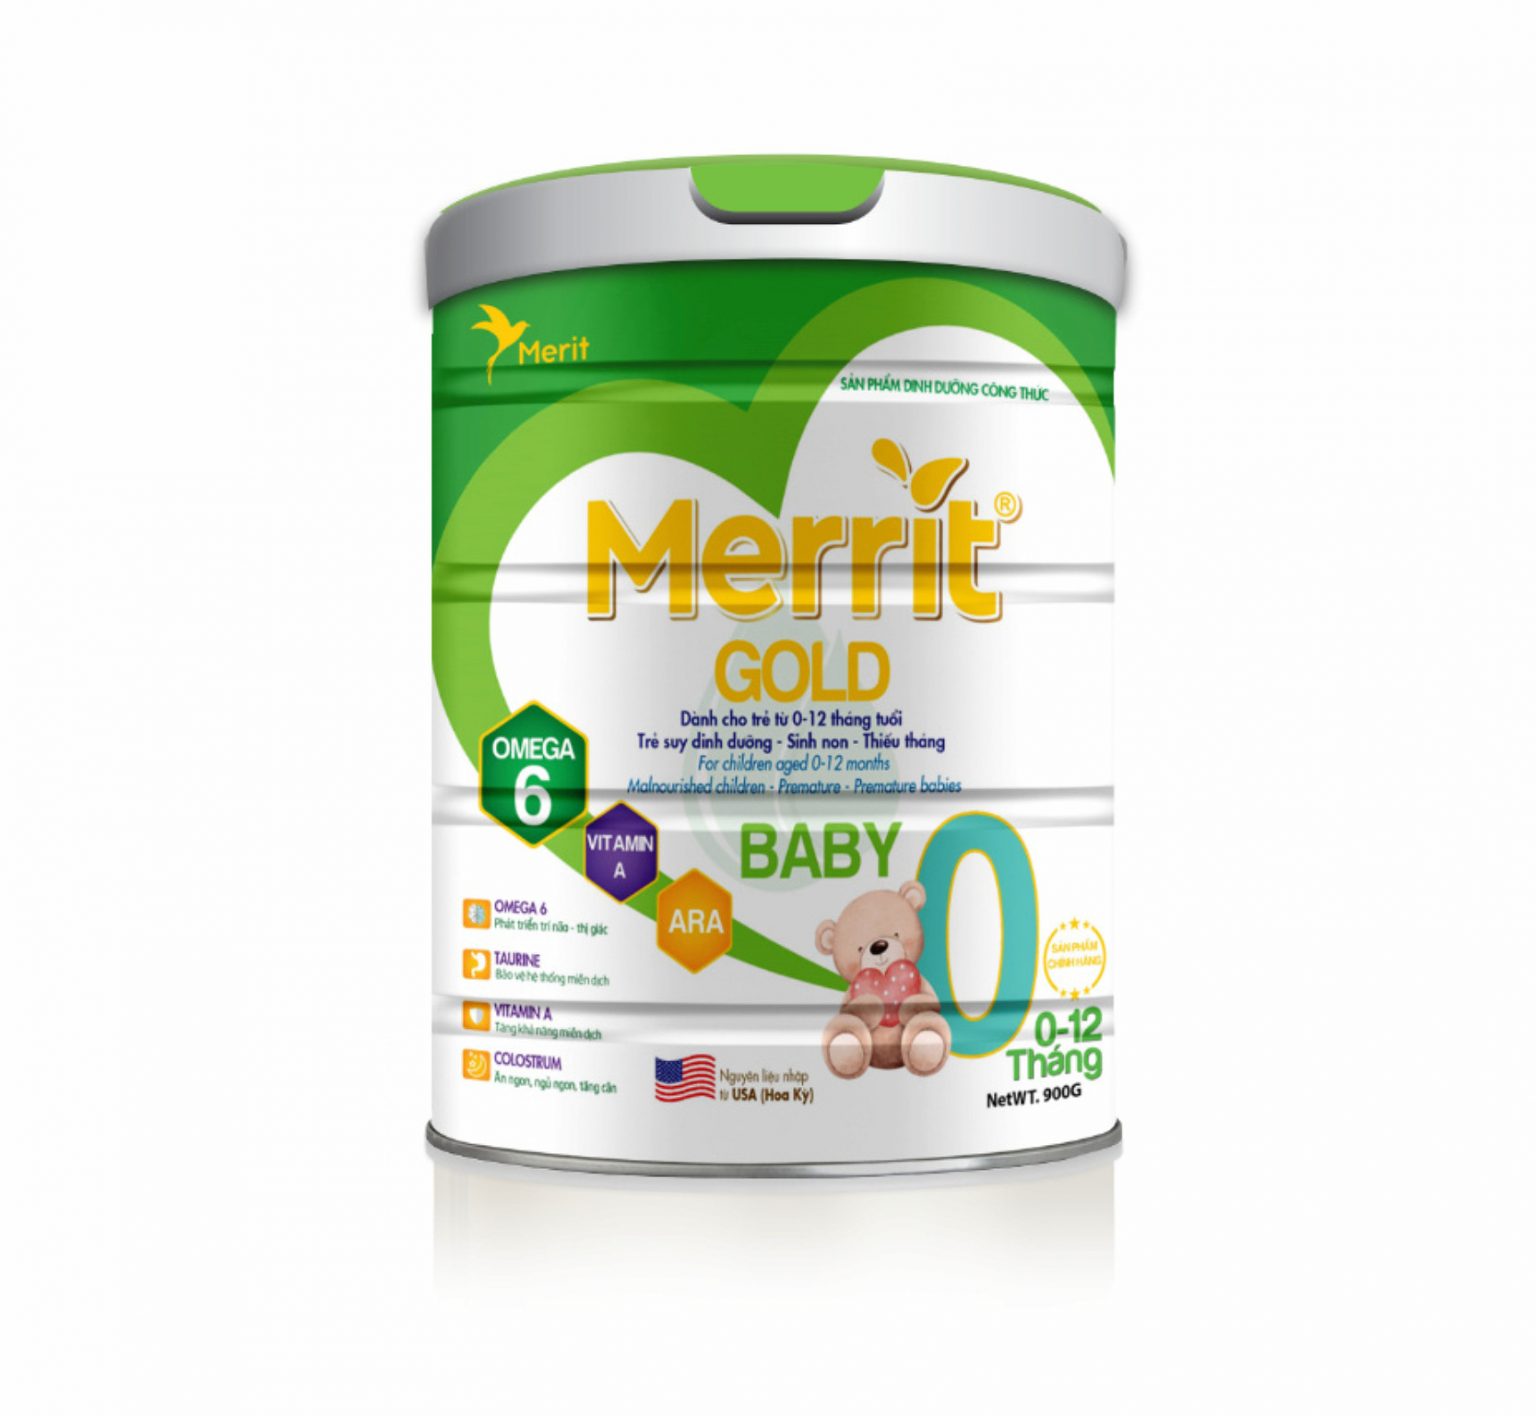 Merrit Gold Baby - Dành Cho Trẻ Từ 0-12 Tháng Tuổi